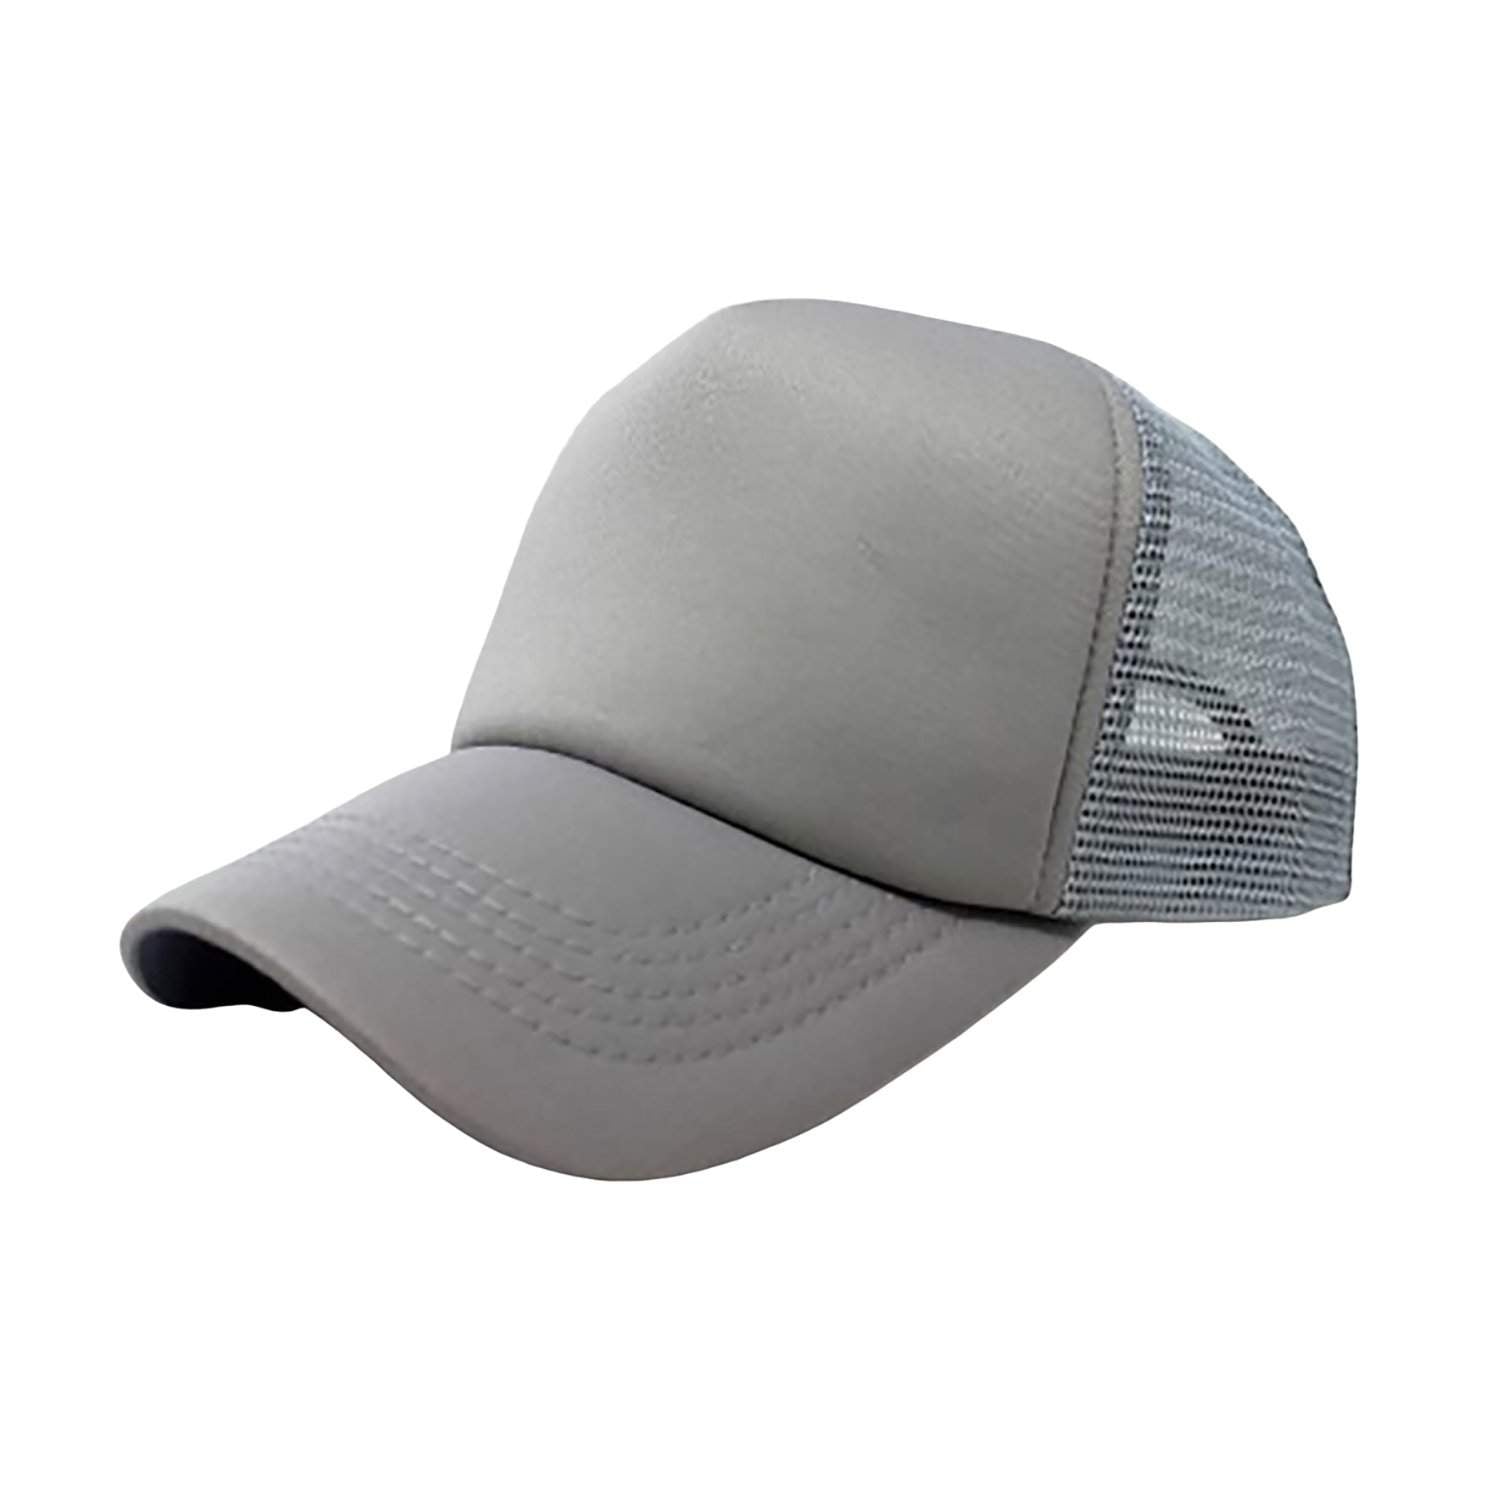 Pack of 3 Mechaly Trucker Hat Adjustable Cap